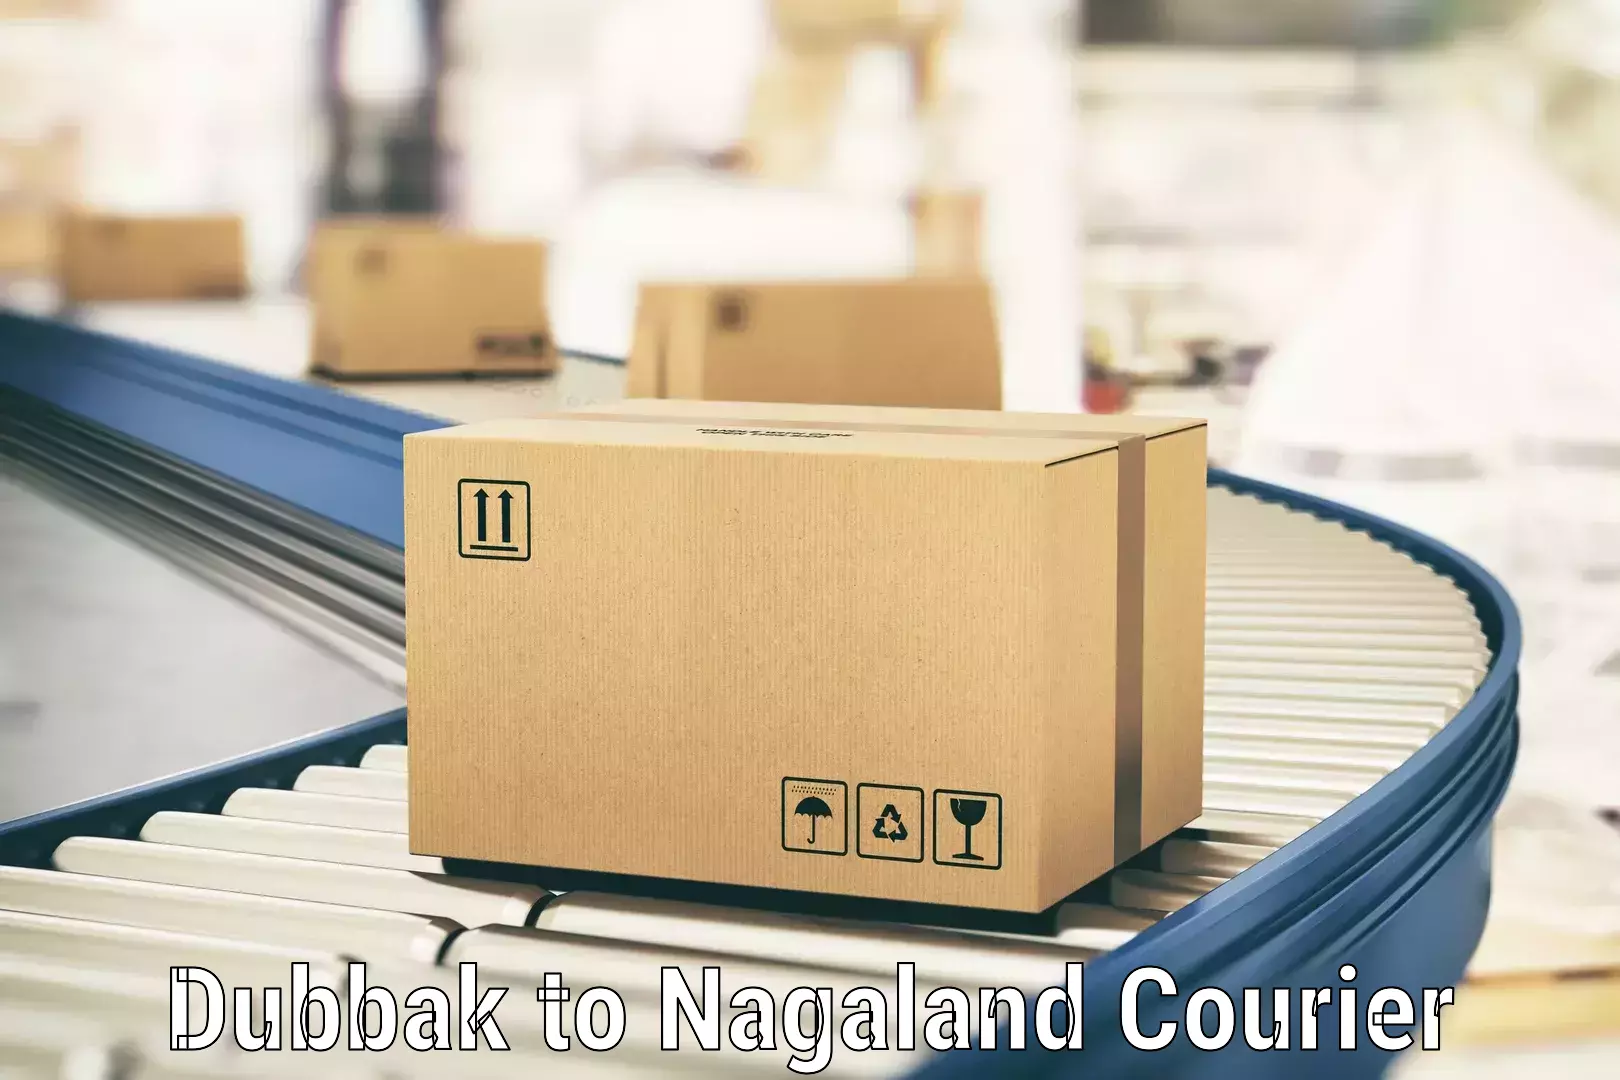 Premium courier services Dubbak to Longleng